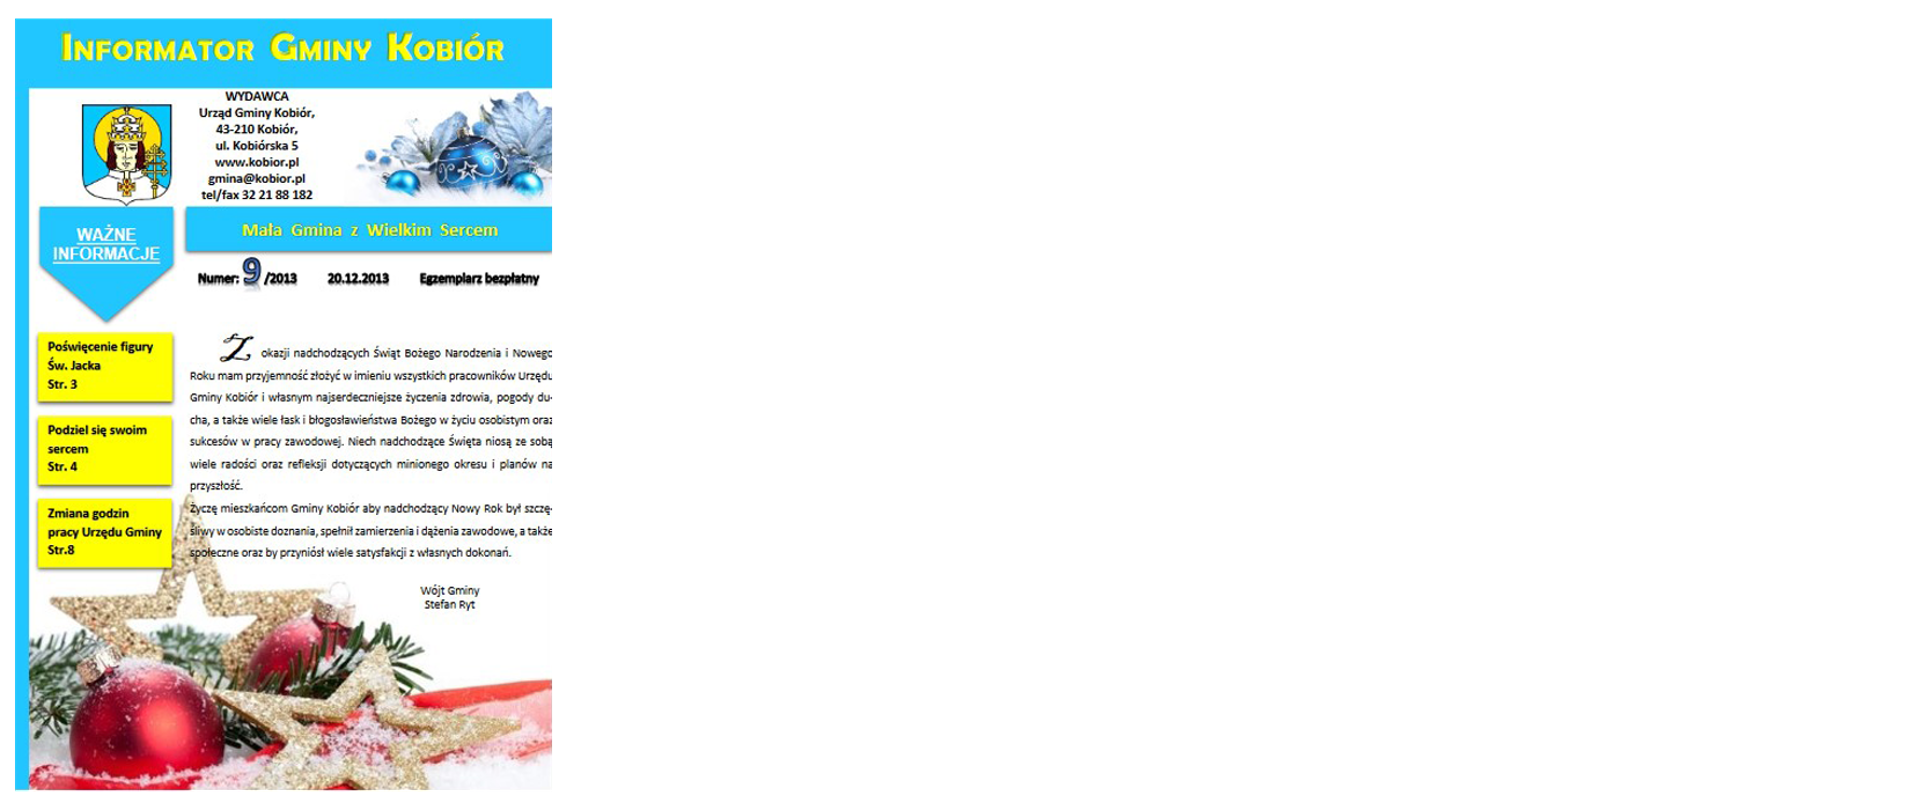 Zdjęcie przedstawia okładkę informatora Gminy Kobiór z grudnia 2013 roku na której widać najważniejsze informacje dla mieszkańców oraz bąbki choinkowe